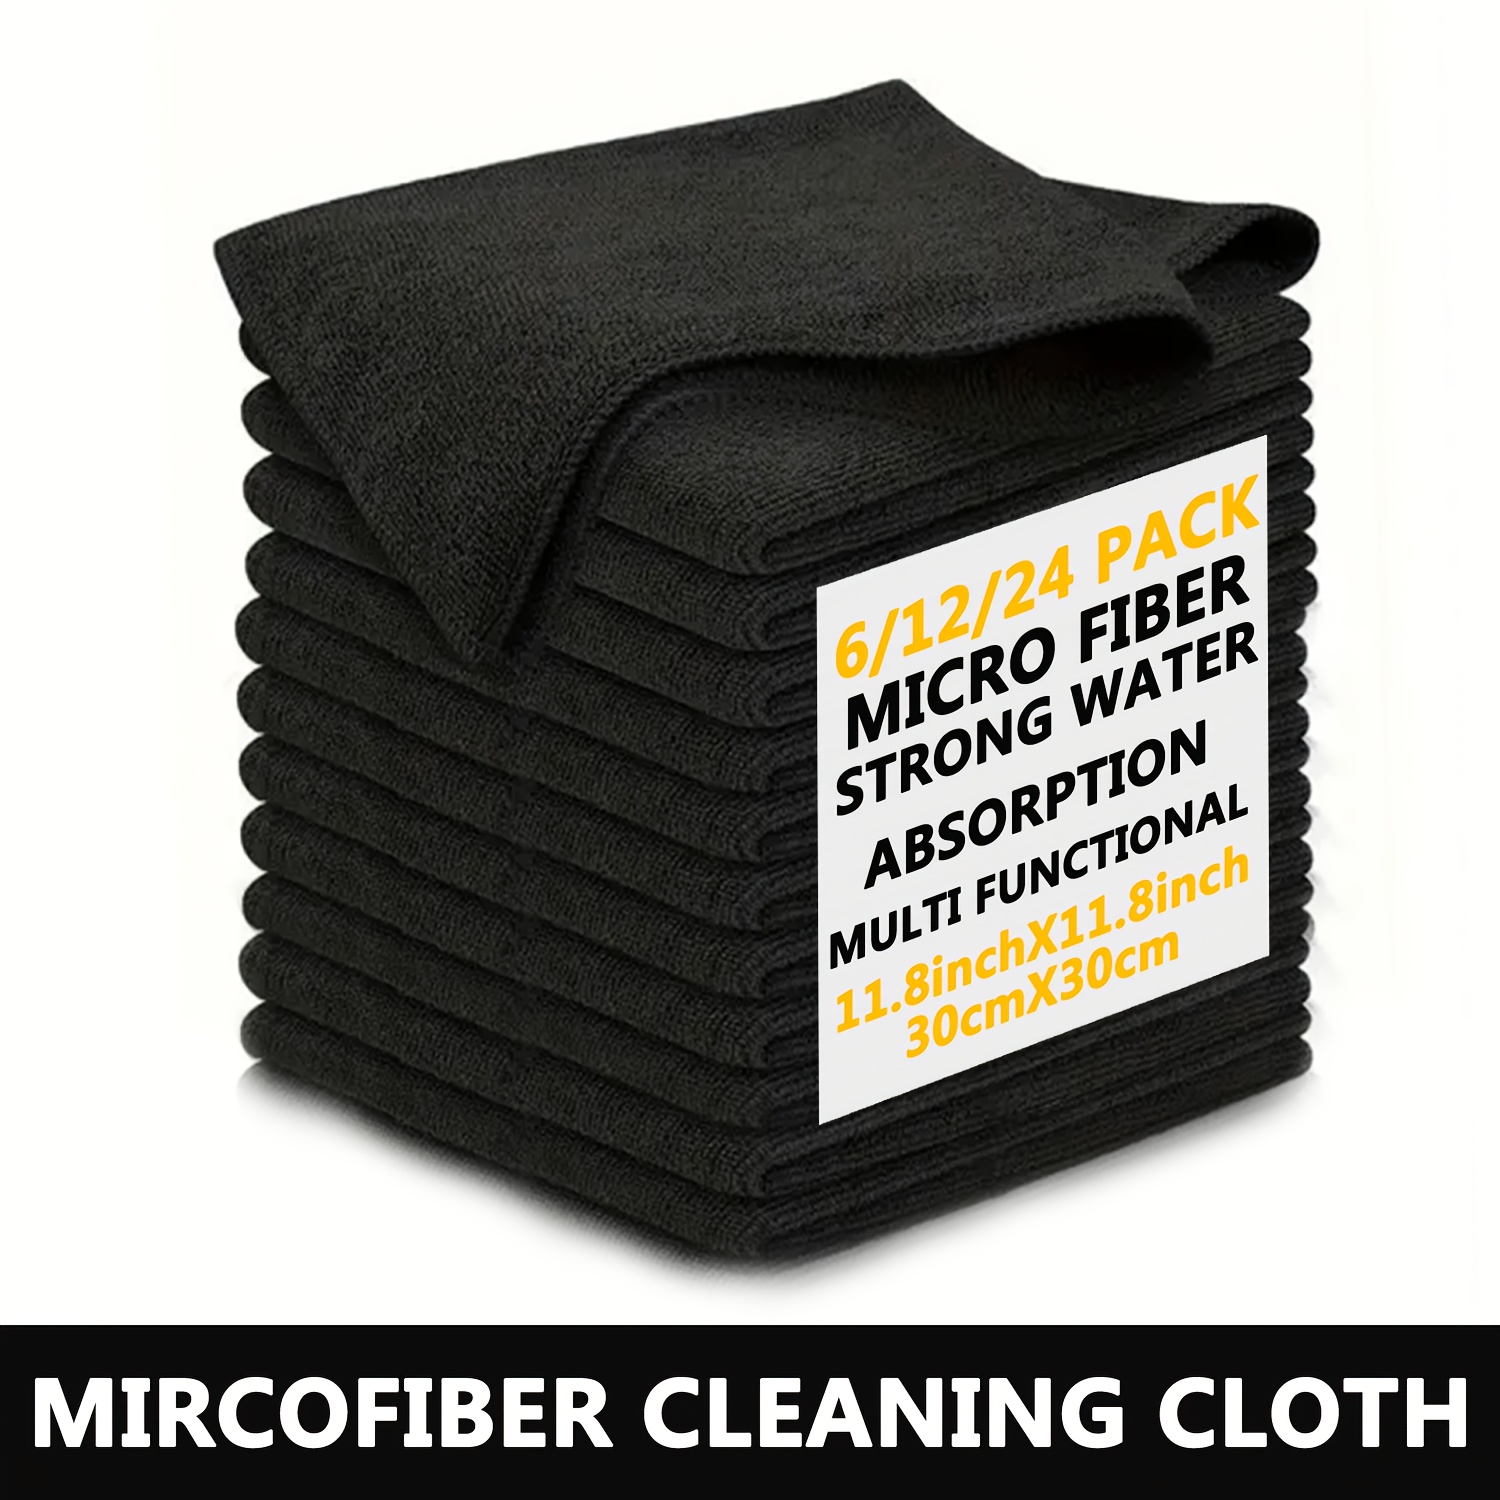 Chiffons lingette nettoyage microfibre 10 x 10 cm - 50pcs